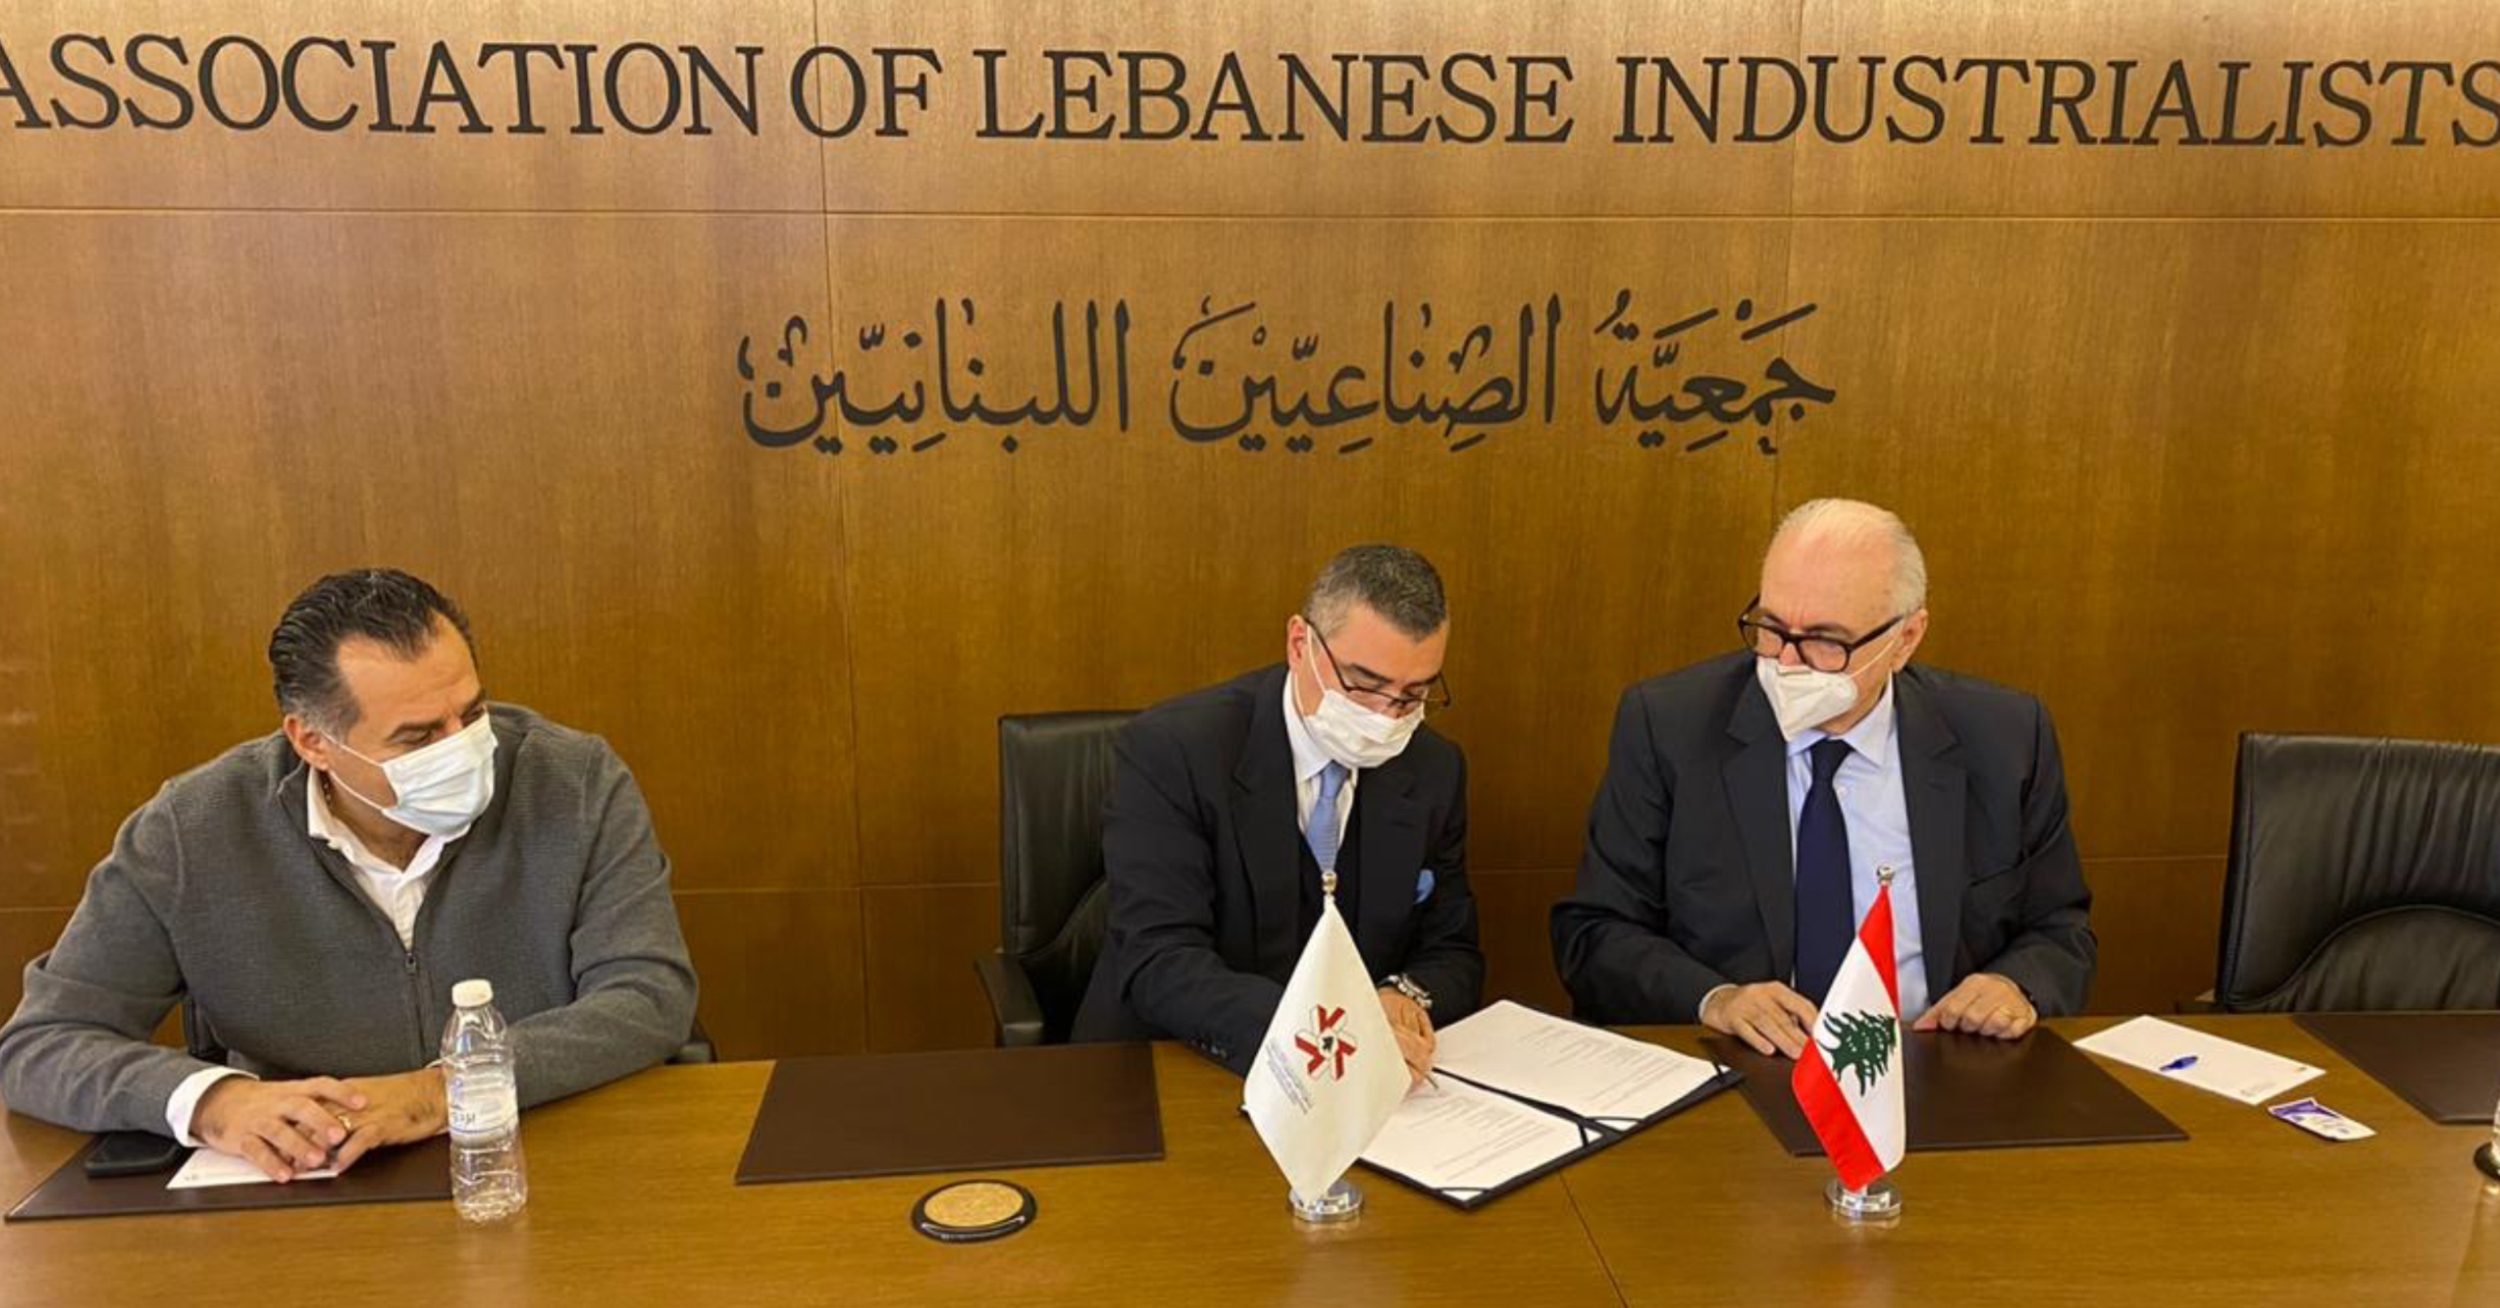 “سيدر أوكسيجين” توقّع مذكرة تفاهم مع جمعية الصناعيين اللبنانيين.